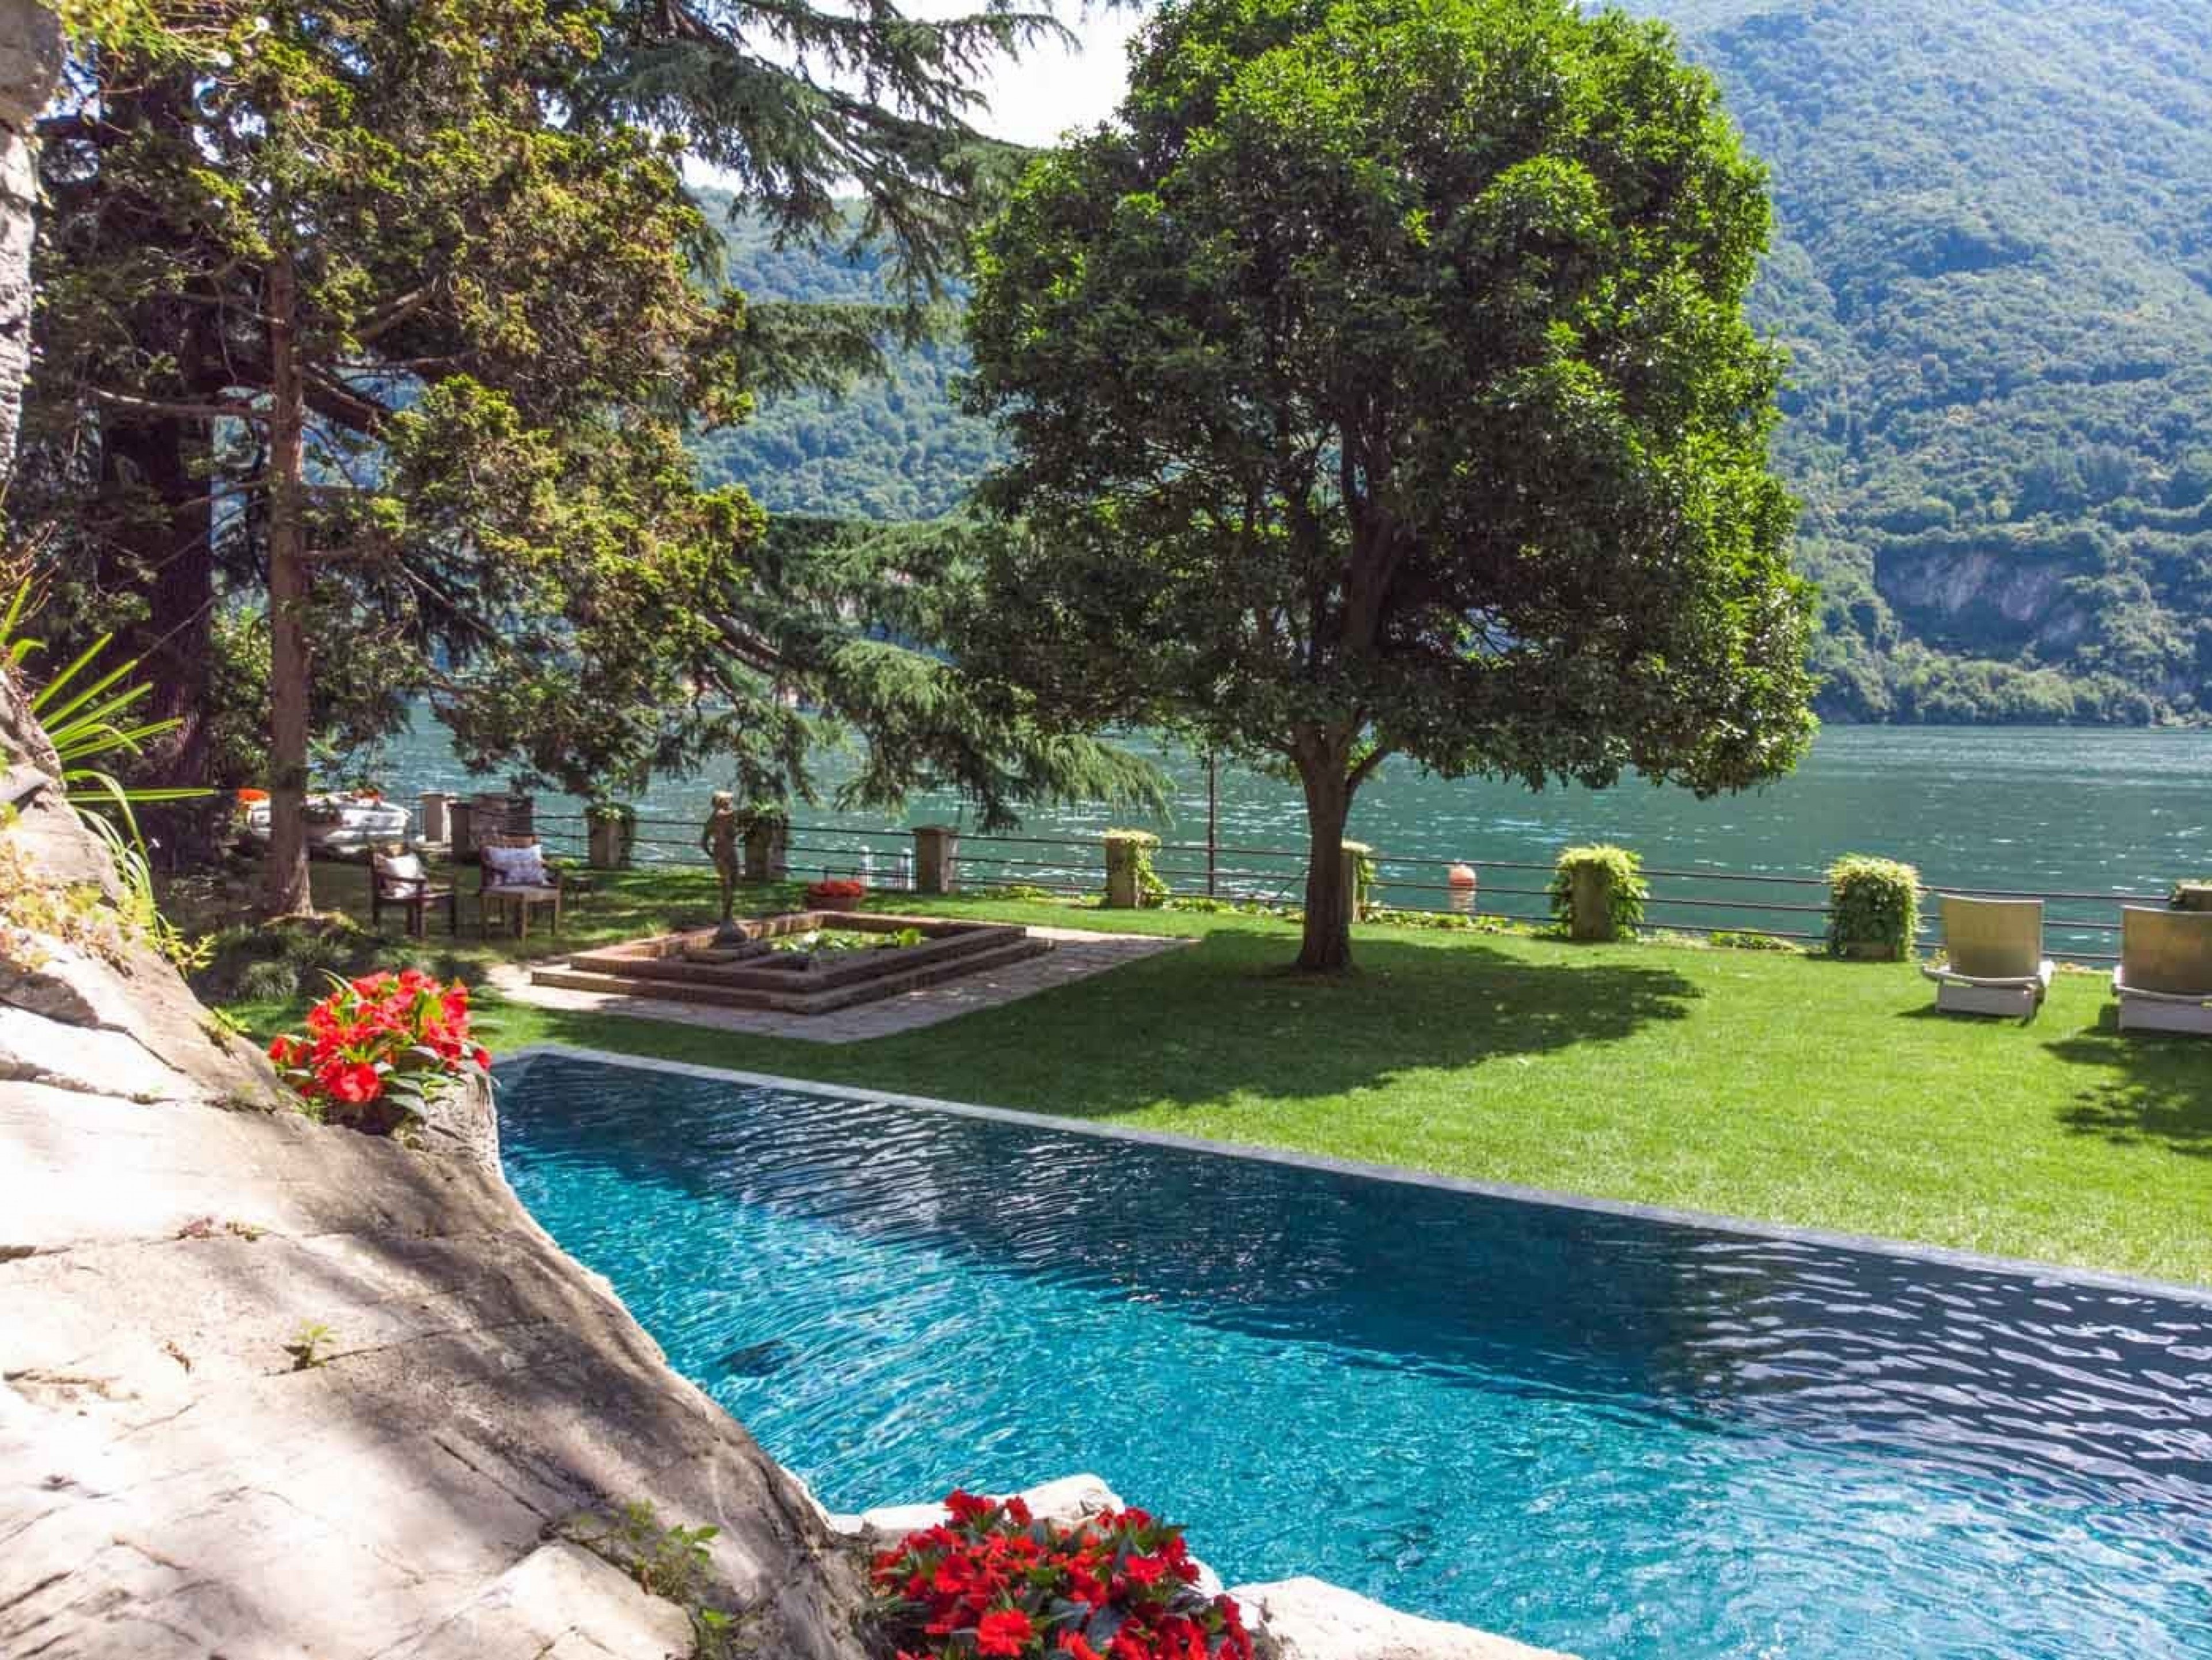 Lake Como villa rentals with pools - Adria